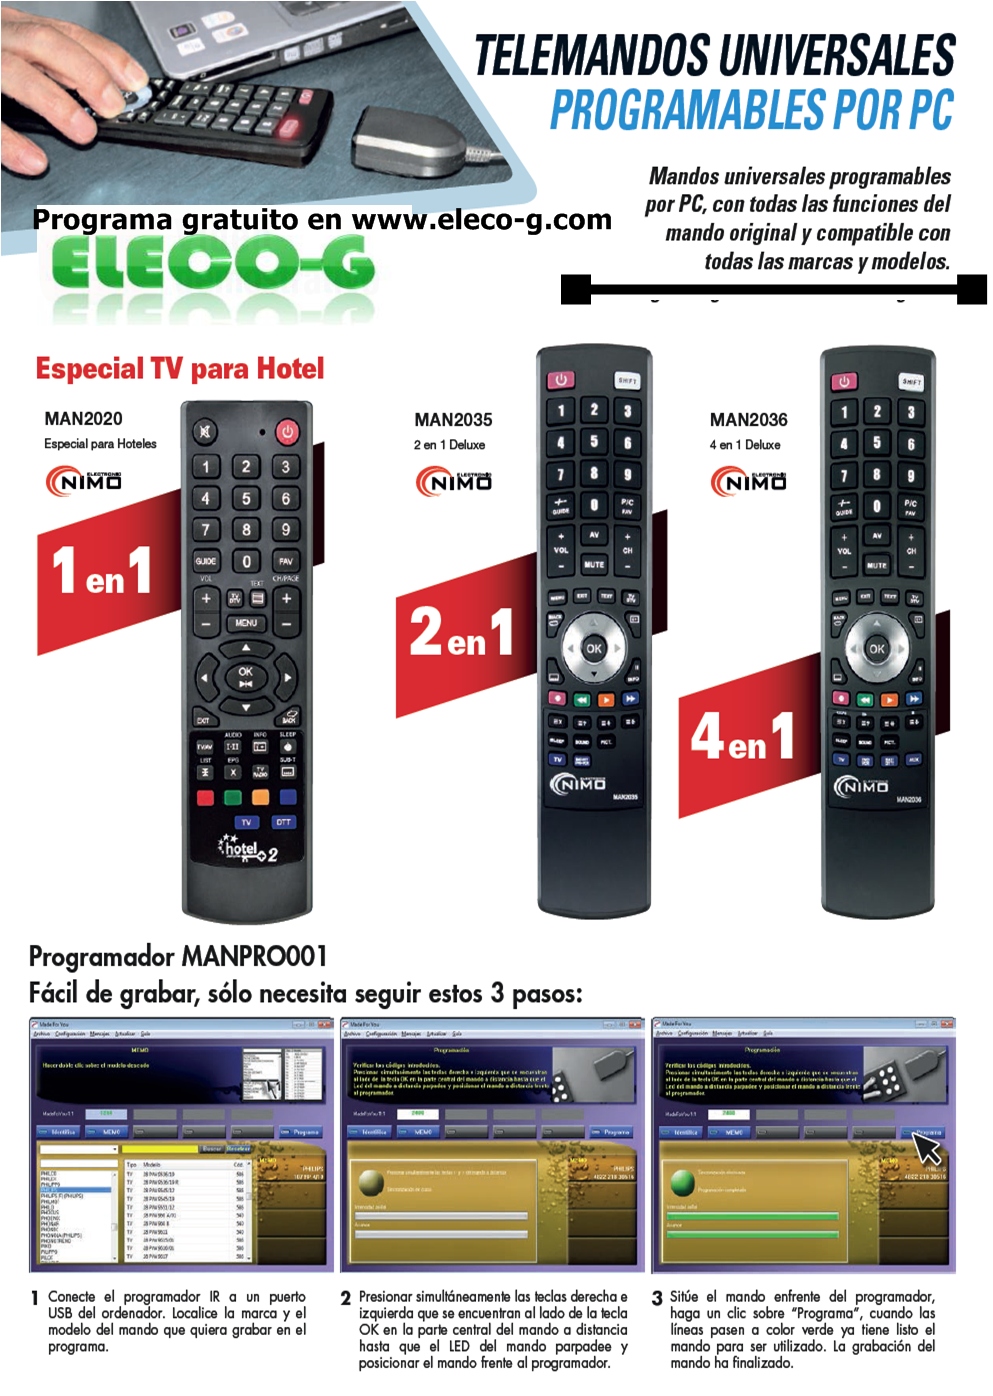 MAN2035 Programador NIMO-GBS para mandos a distancia + Mando programable  por PC (2 en 1) - MANPRO001+ MAN2035